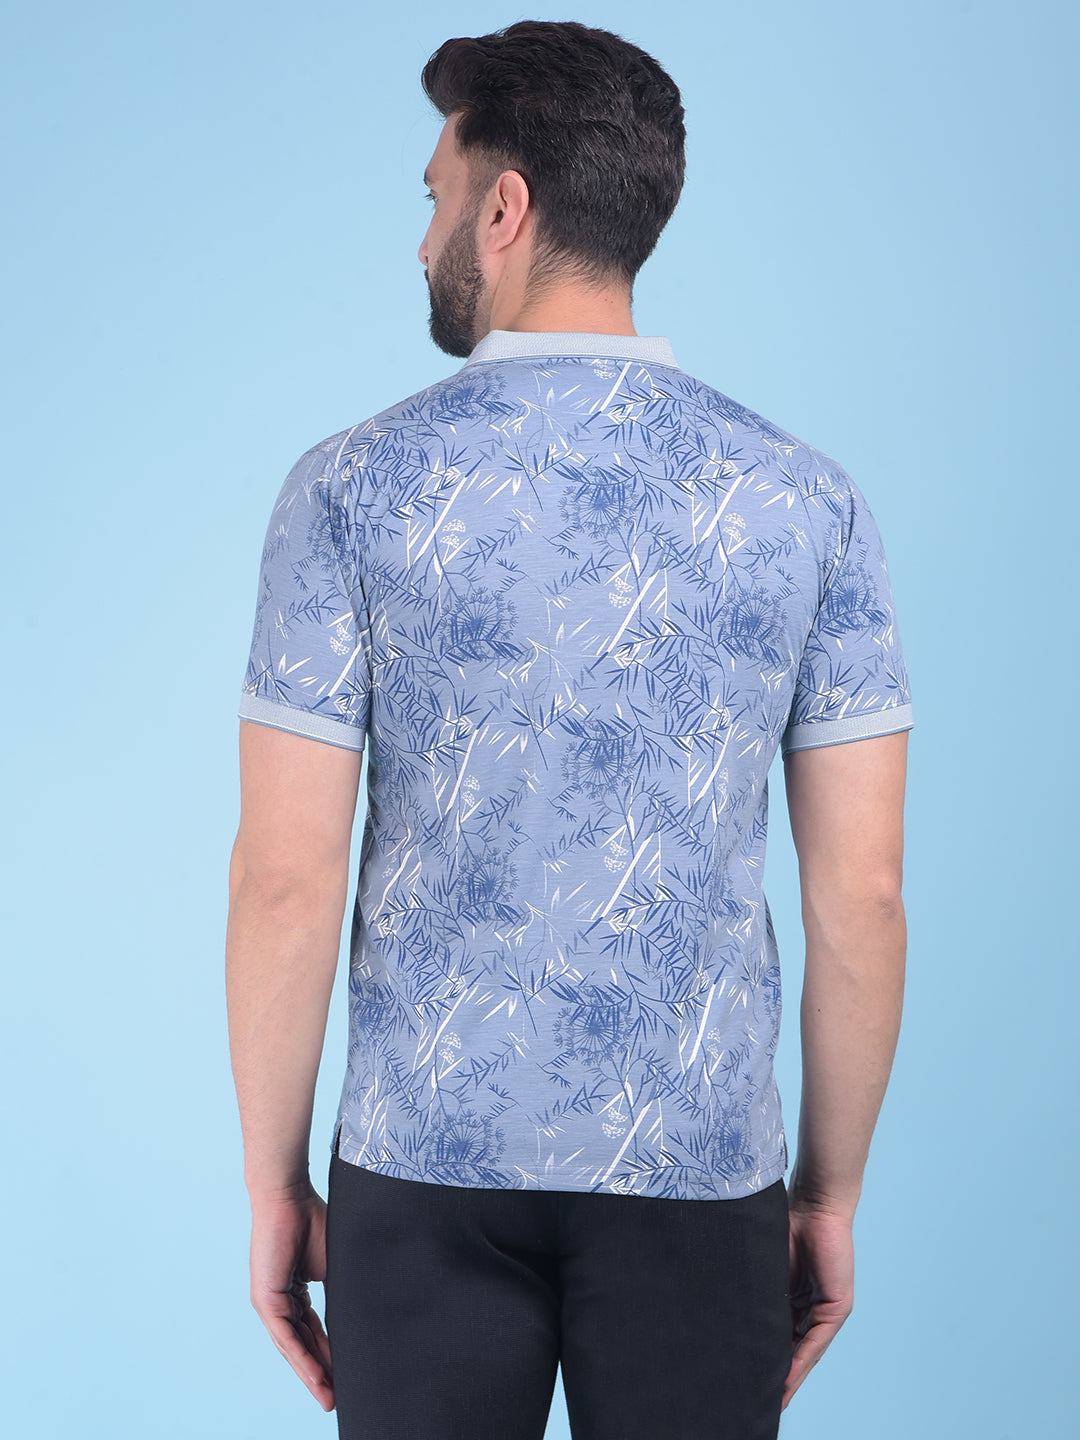 Blue Floral Print T-Shirt-Men T-Shirts-Crimsoune Club